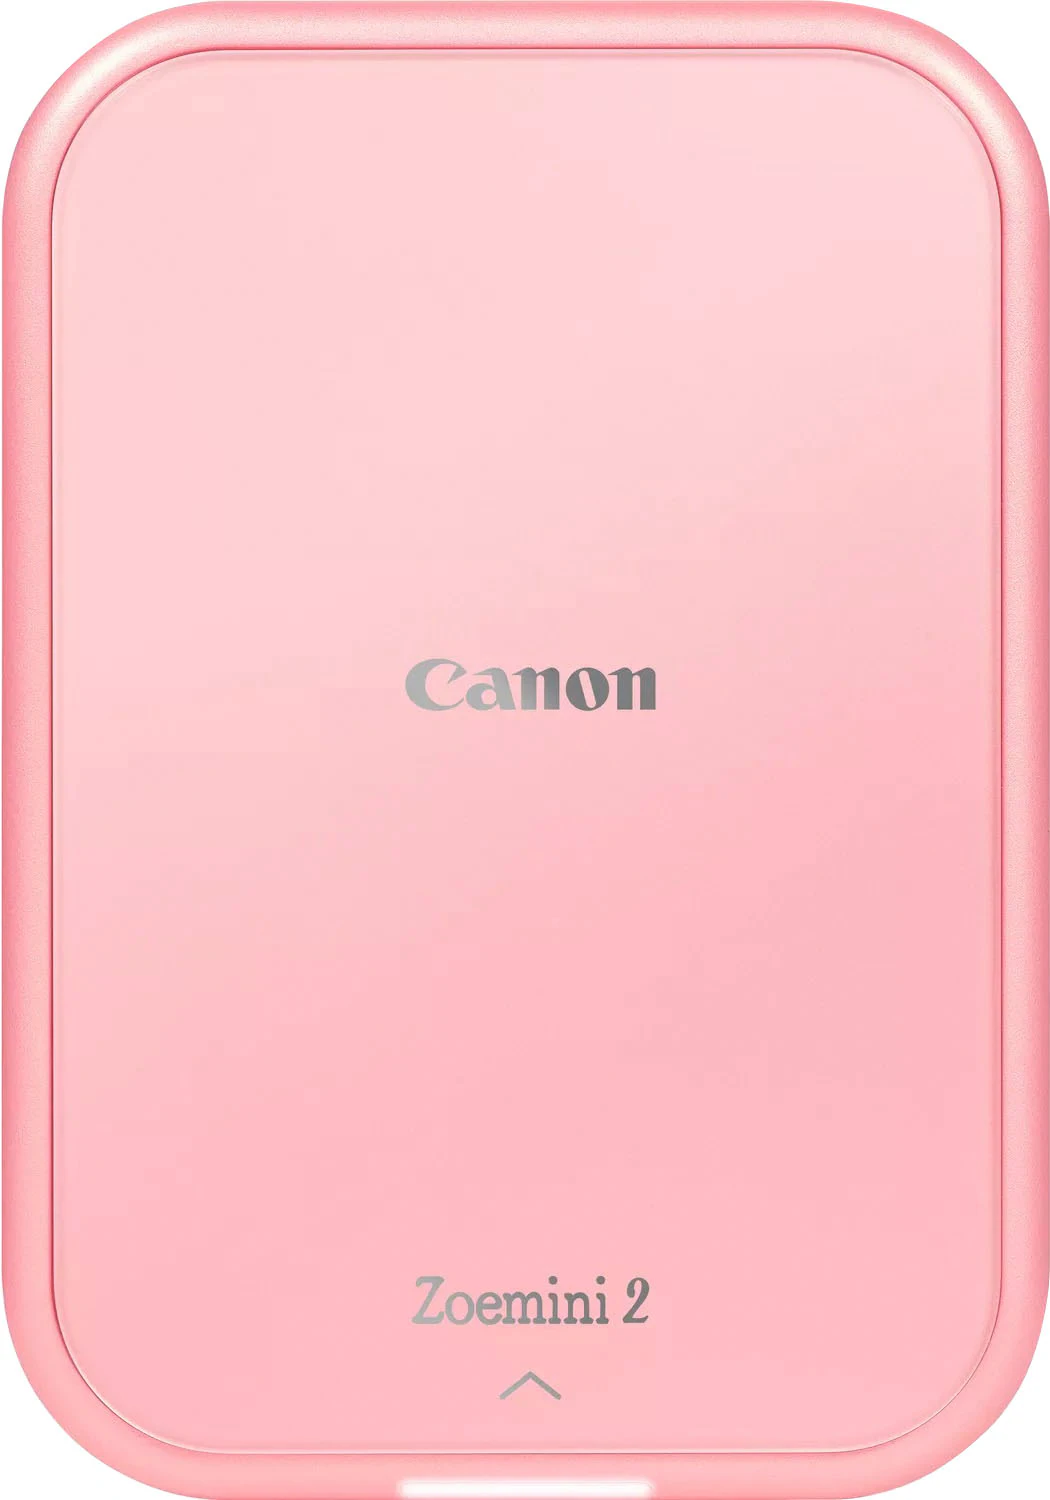 Fotografischer Drucker Canon Zoemini 2 Rosa günstig online kaufen